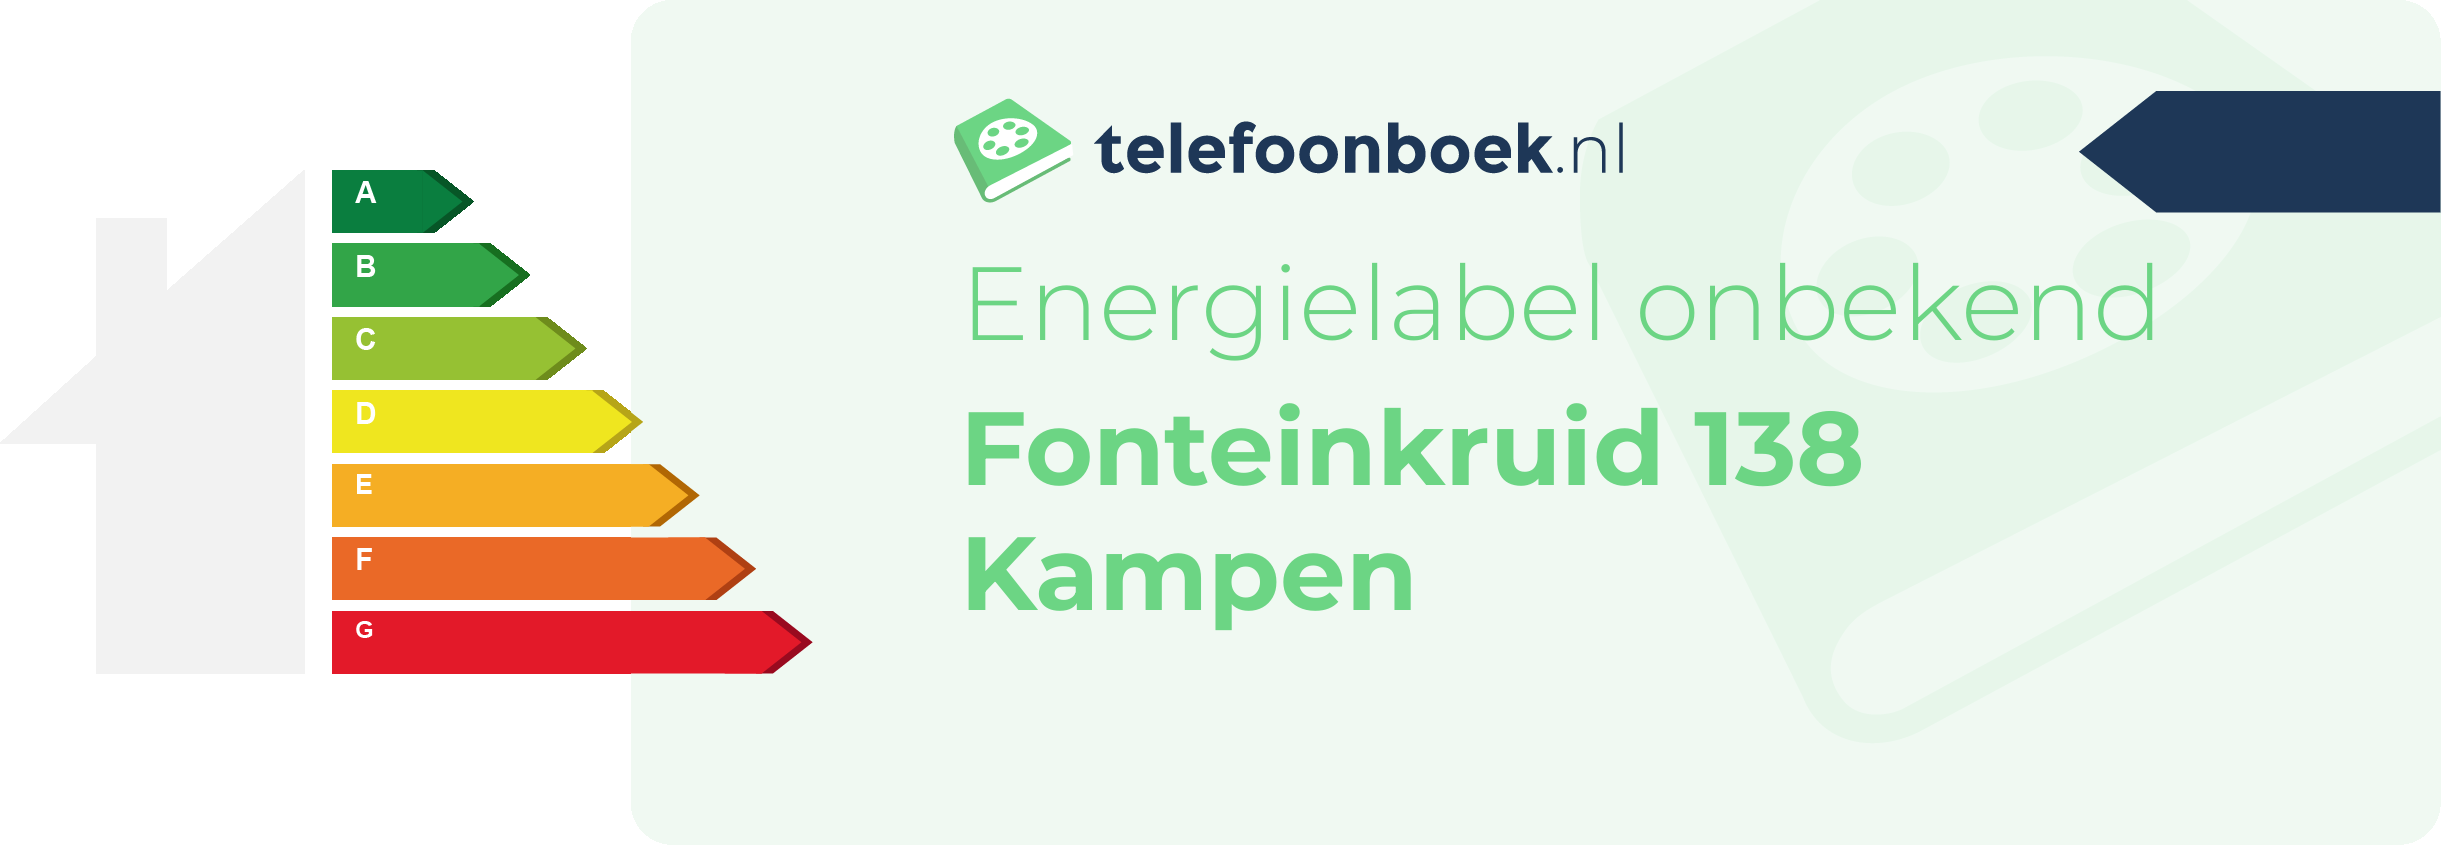 Energielabel Fonteinkruid 138 Kampen